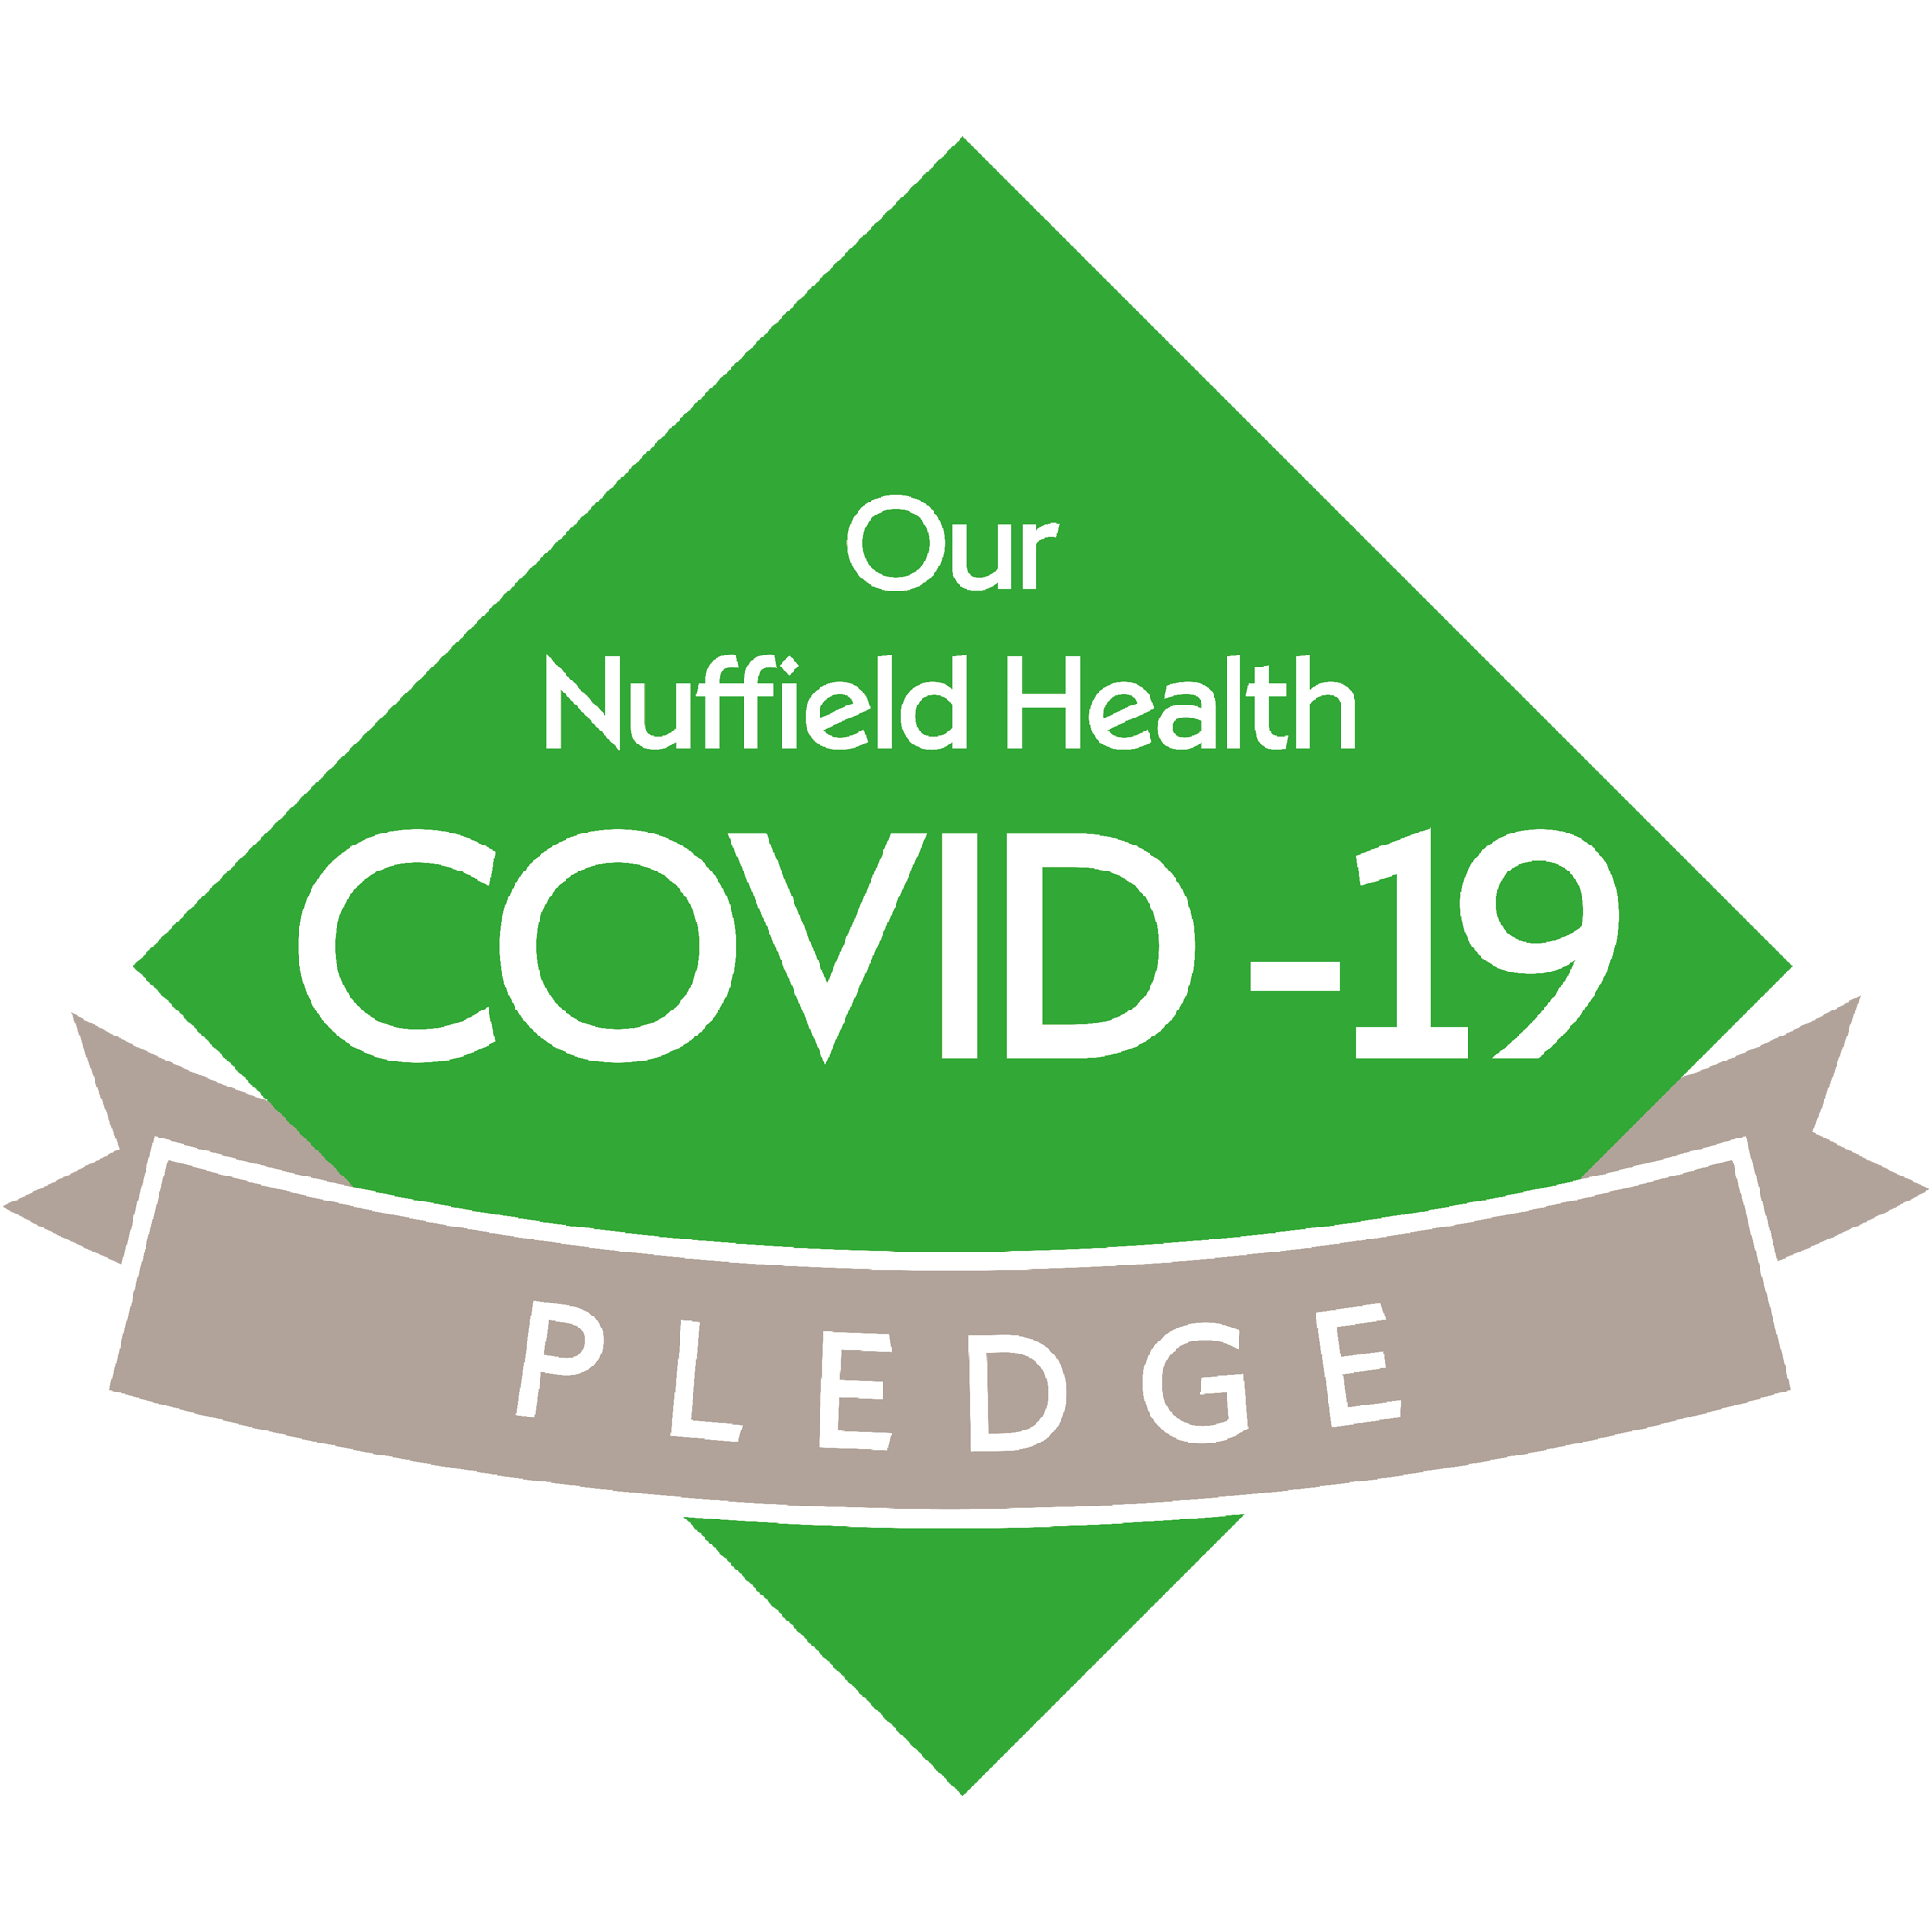 The Nuffield Health COVID-19 Pledge